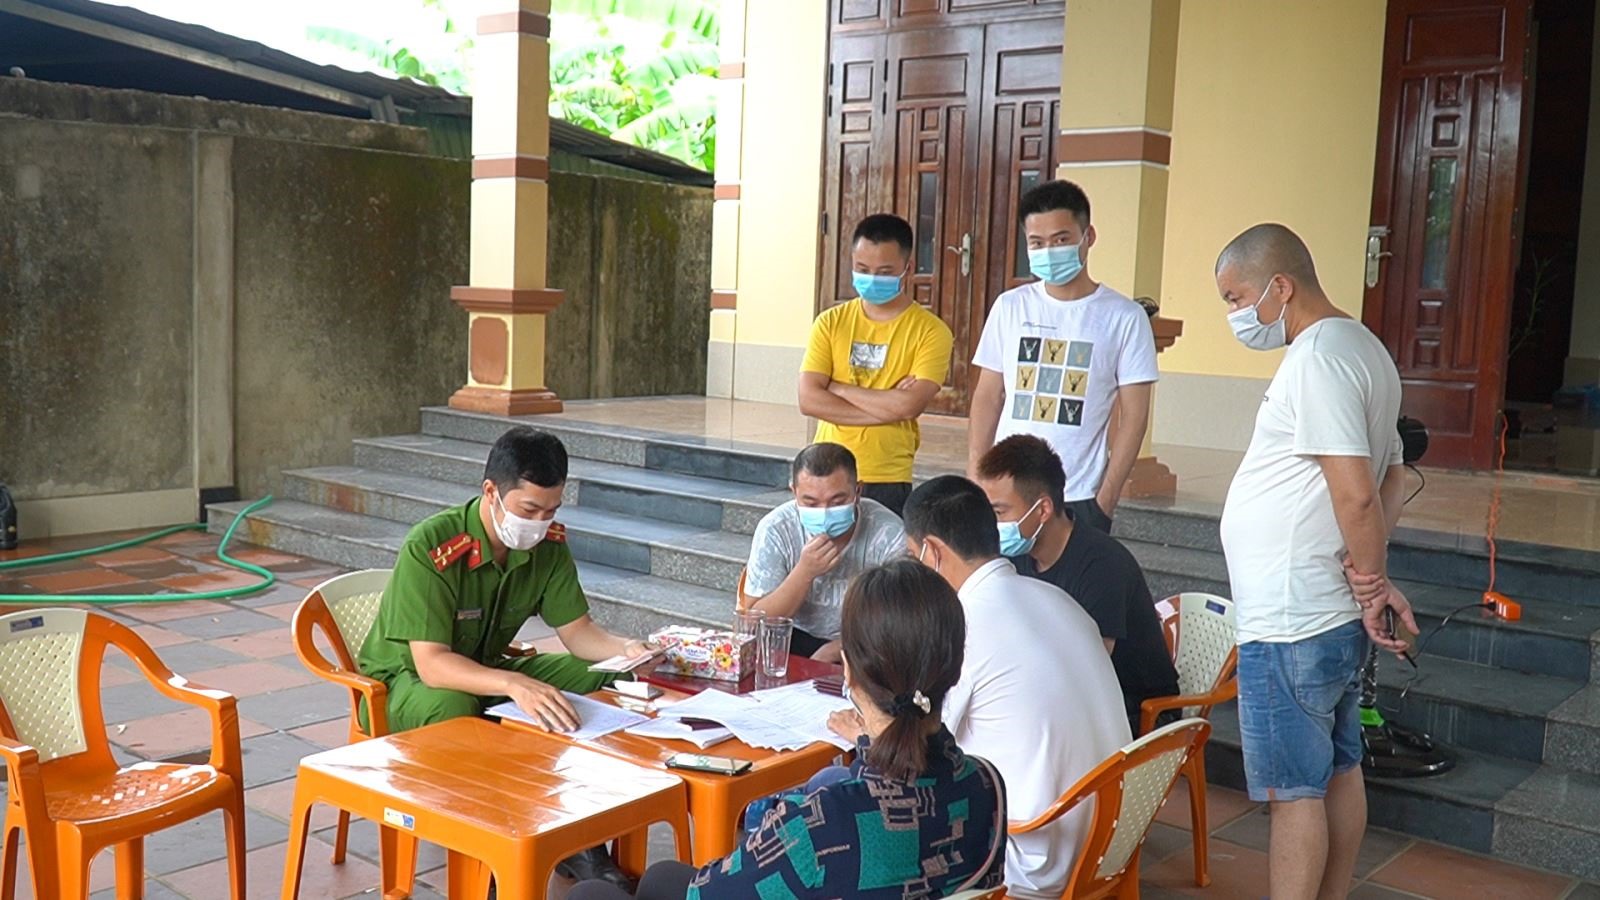 Công an xã Cam Thành kiểm tra các loại giấy tờ hành chính liên quan của những người Trung Quốc trú tại địa phương